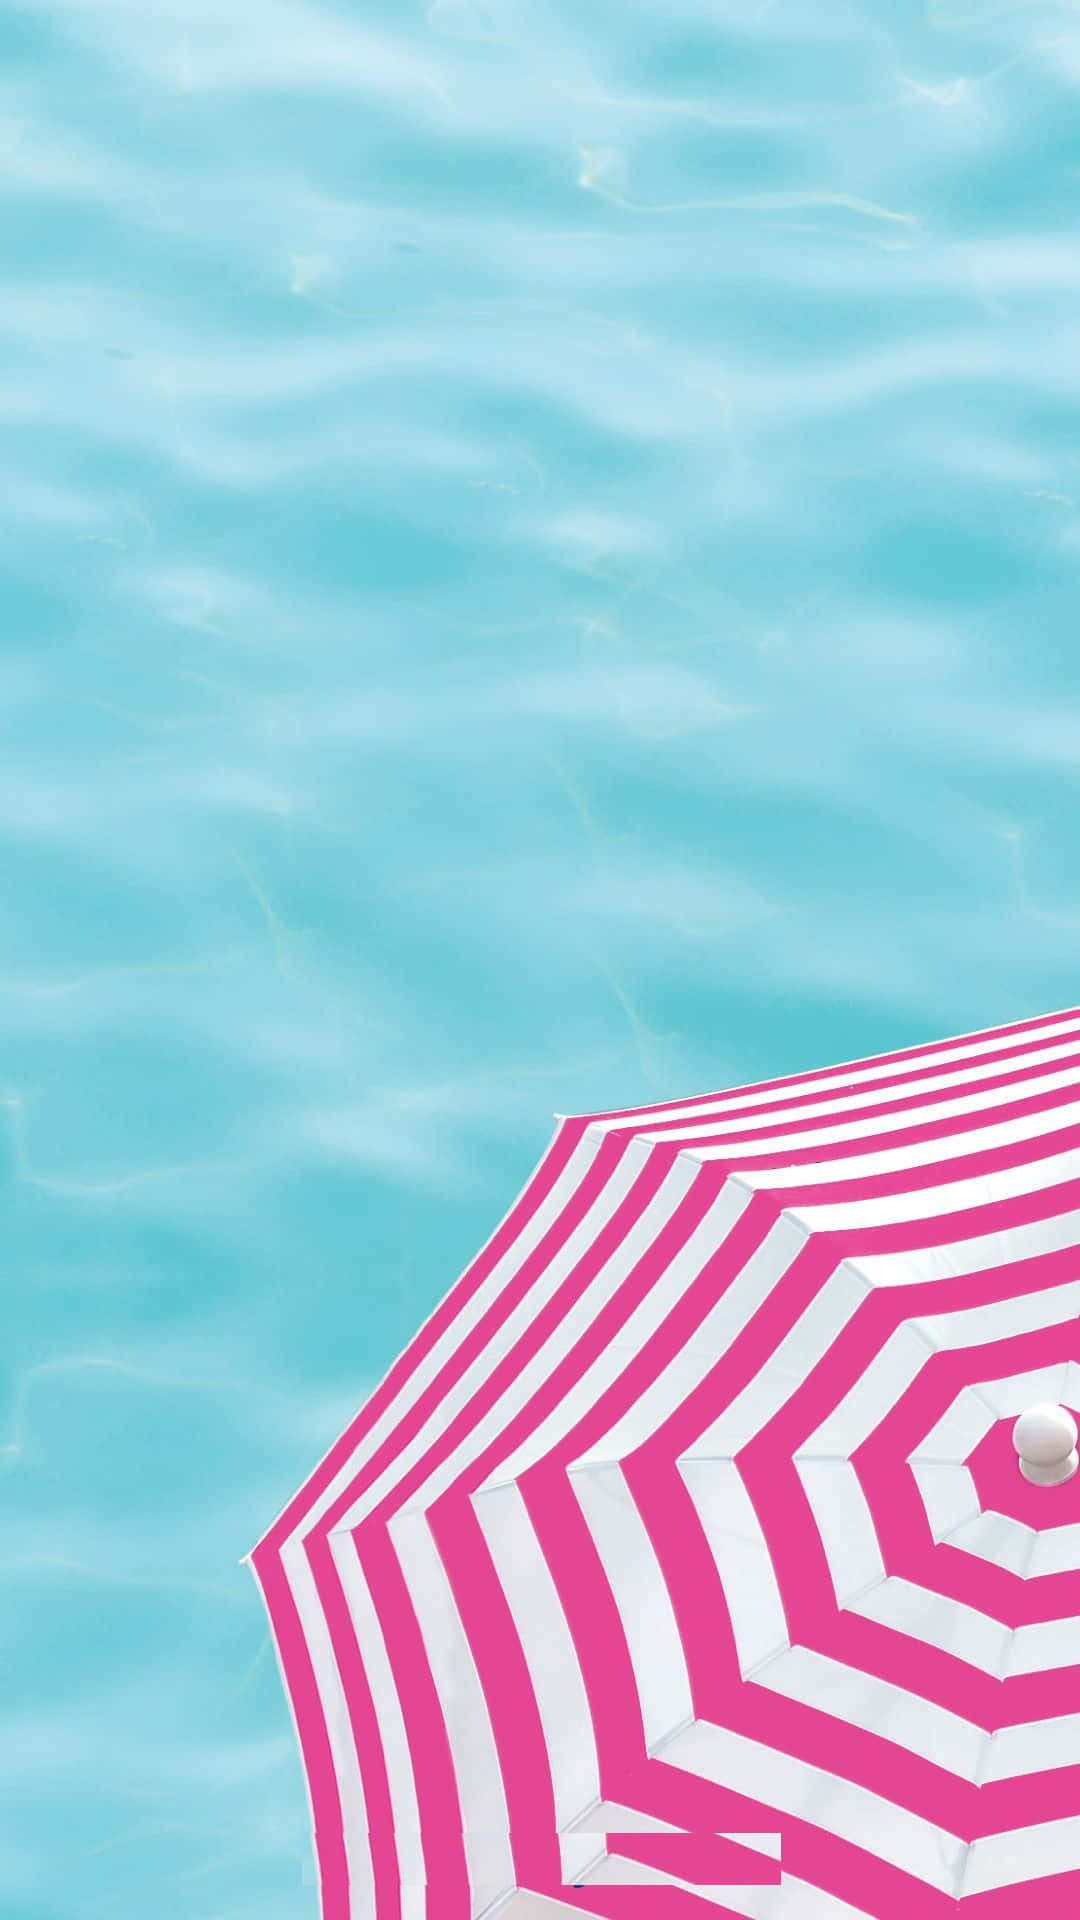 Vibrant Beach Umbrella in the Sun Wallpaper